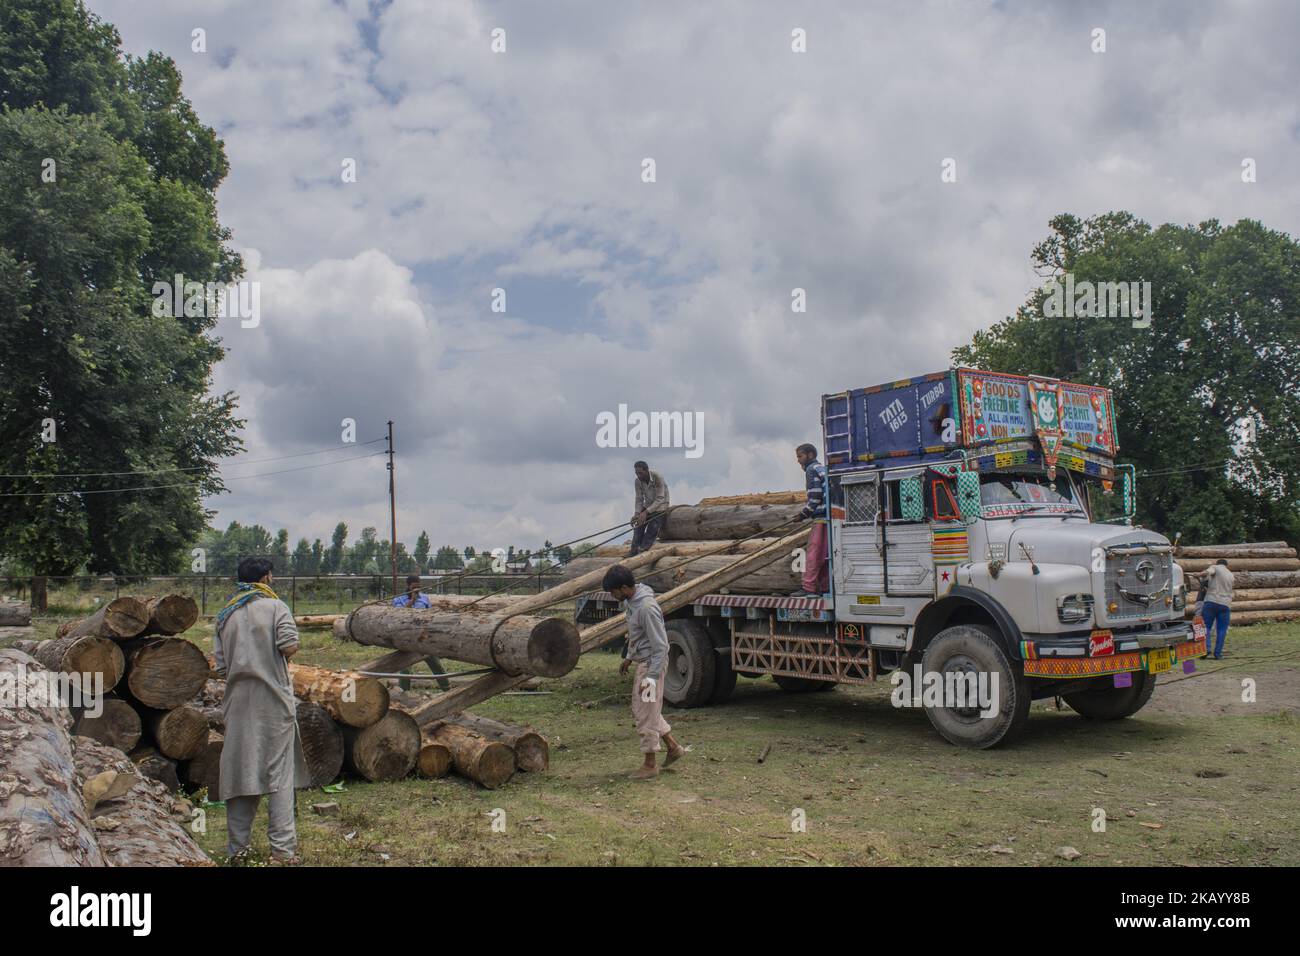 Los leñadores de Cachemira cargan troncos de árboles en un camión maderero en Timber Transport Range el 5 de julio de 2018 en Srinagar, la capital de verano de la Cachemira administrada por la India. El trabajo de leñadores en Cachemira sigue siendo en su mayor parte insuficiente y no está asegurado contra accidentes. La mayoría son empleados como trabajadores ocasionales en el área de transporte de madera en Srinagar. Debido a la naturaleza de su trabajo, los leñadores tienen una marcha inusual ya que sufren de trastornos ortopédicos, especialmente dolor de espalda crónico. (Foto de Kabli Yawar/NurPhoto) (Foto de Kabli Yawar/NurPhoto) Foto de stock